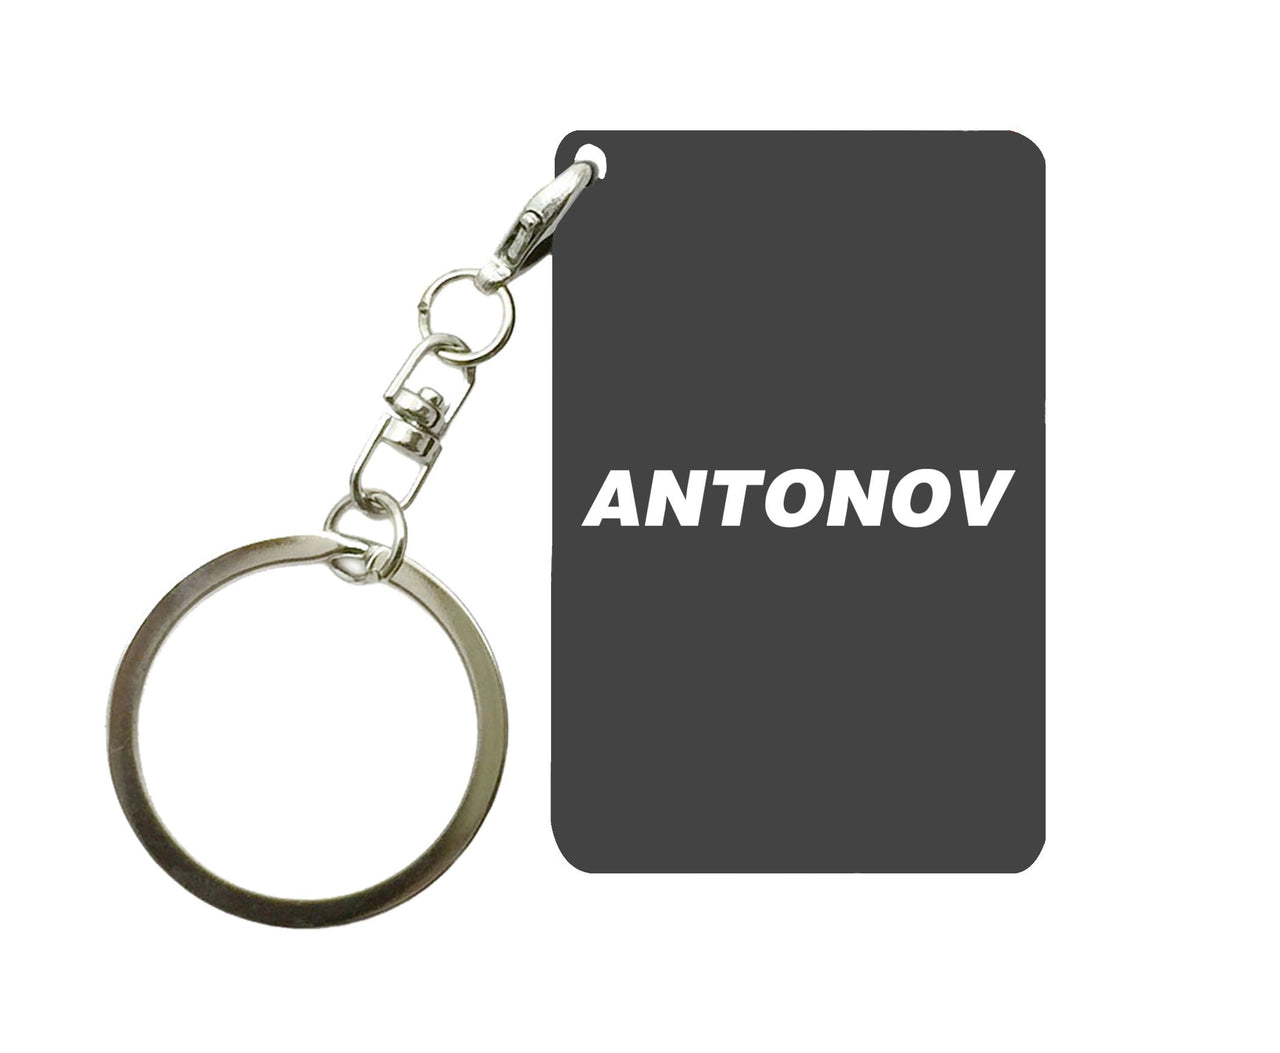 Antonov & Text Designed Key Chains